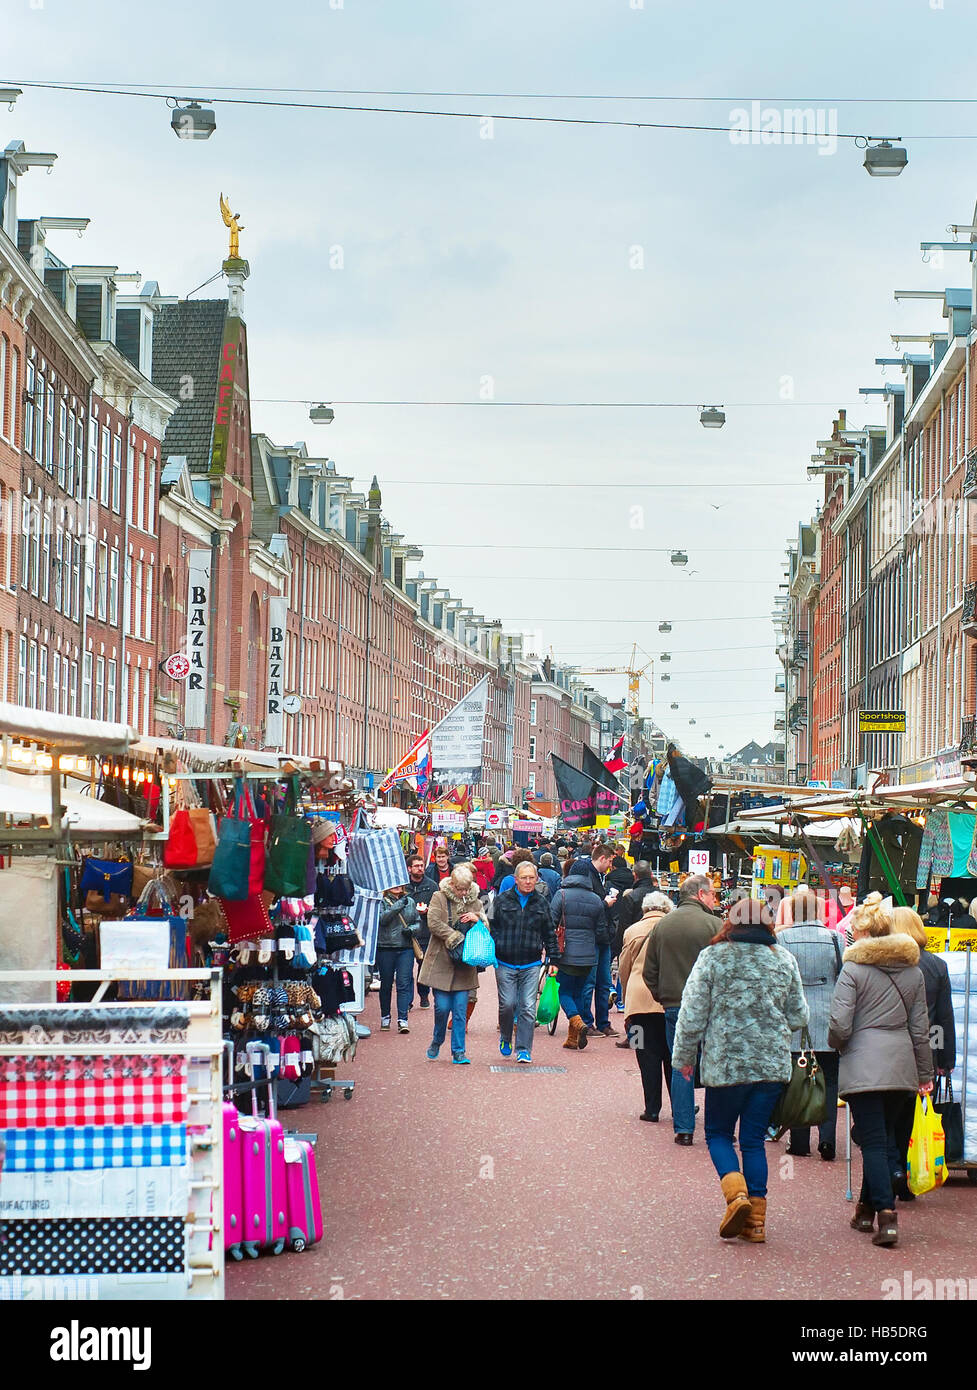 Les gens au marché Albert Cuyp d'Amsterdam. Pays-bas Banque D'Images